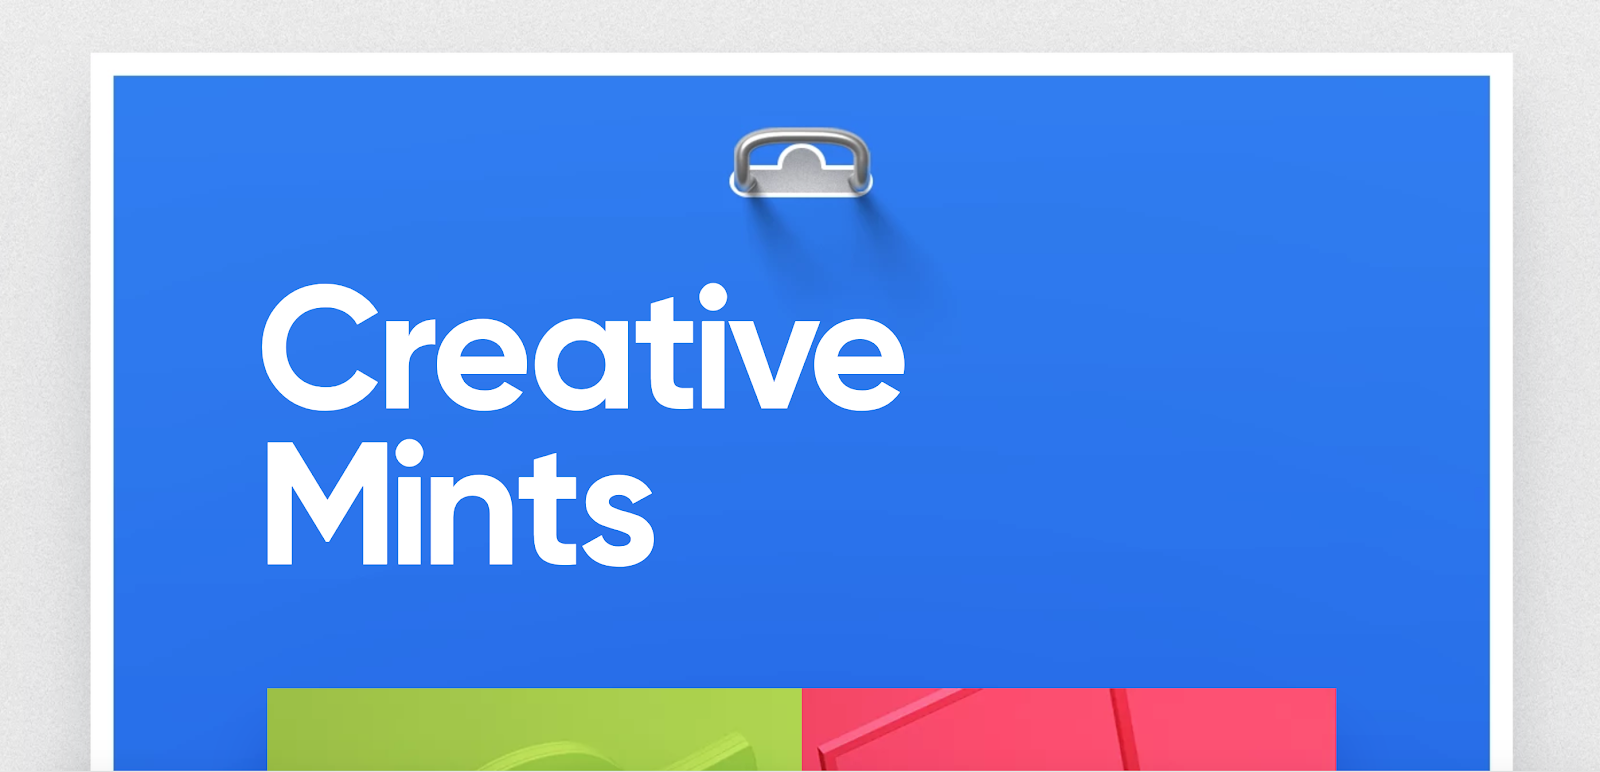 Portafolio de desarrolladores web de Creative Mints